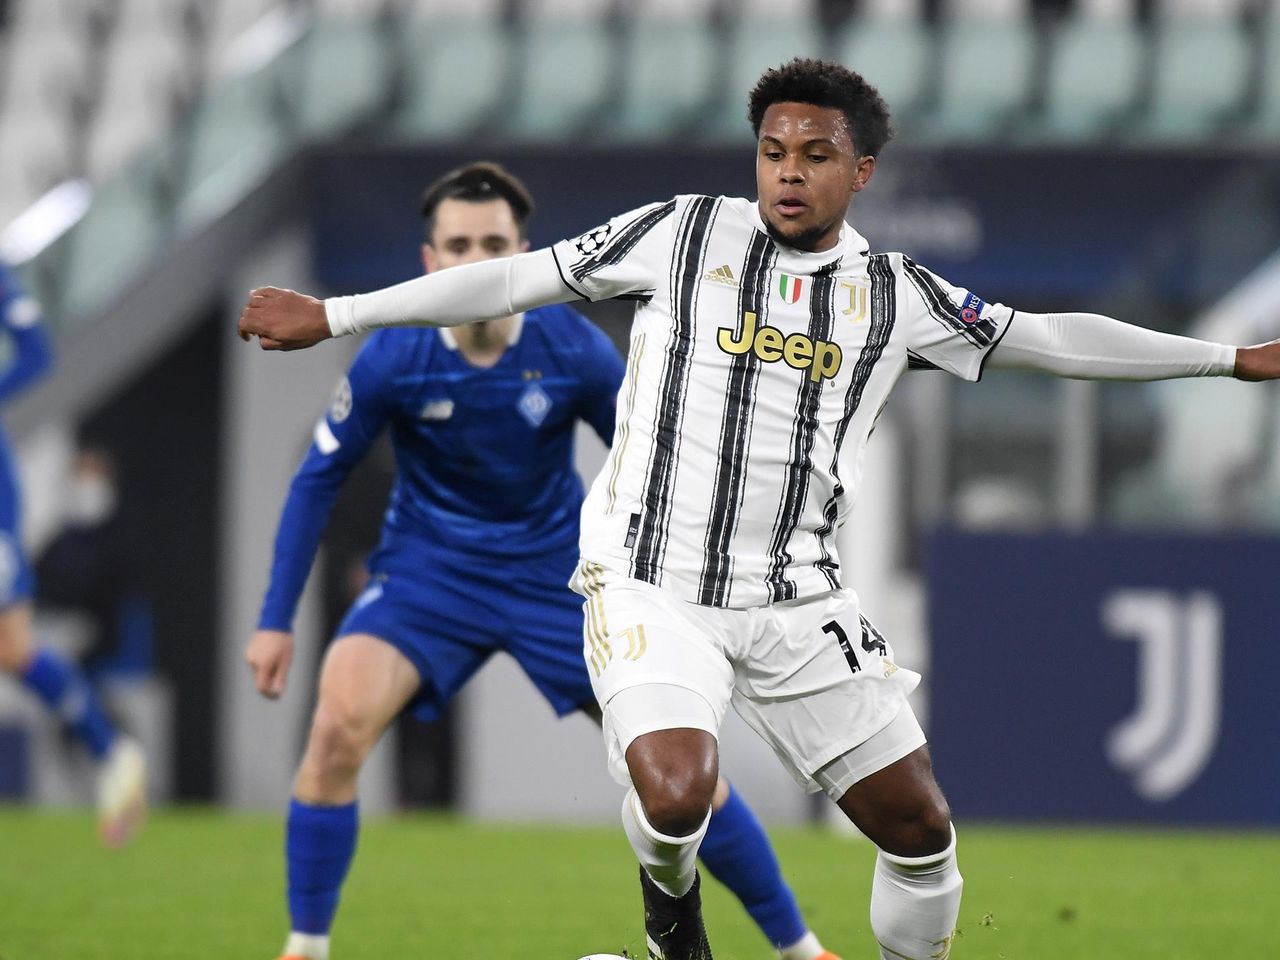 Le 5 verità di Juventus-Dinamo Kiev: McKennie merita spazio, ora serve  continuità - Eurosport